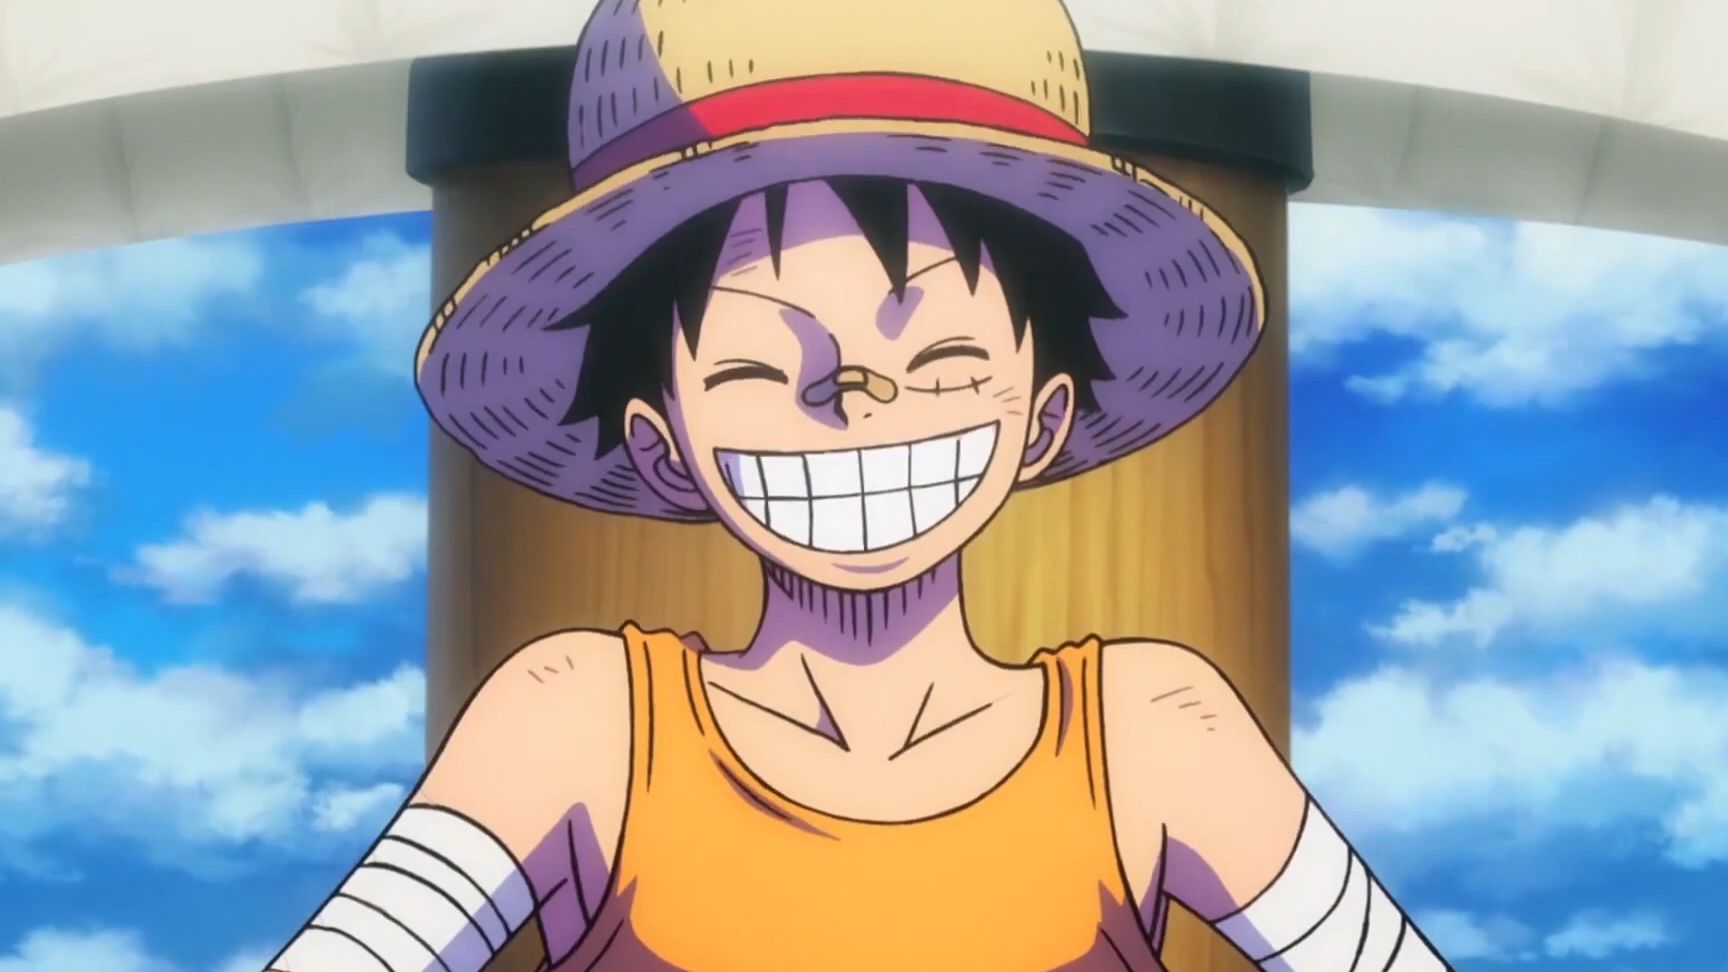 Khám phá nụ cười tươi sáng của Luffy trong hình ảnh này! Đó là nguồn cảm hứng không chỉ cho các nhân vật trong One Piece mà còn cho chúng ta trong cuộc sống. Nụ cười của Luffy thể hiện sự kiên trì và quyết tâm đối với mọi thử thách.